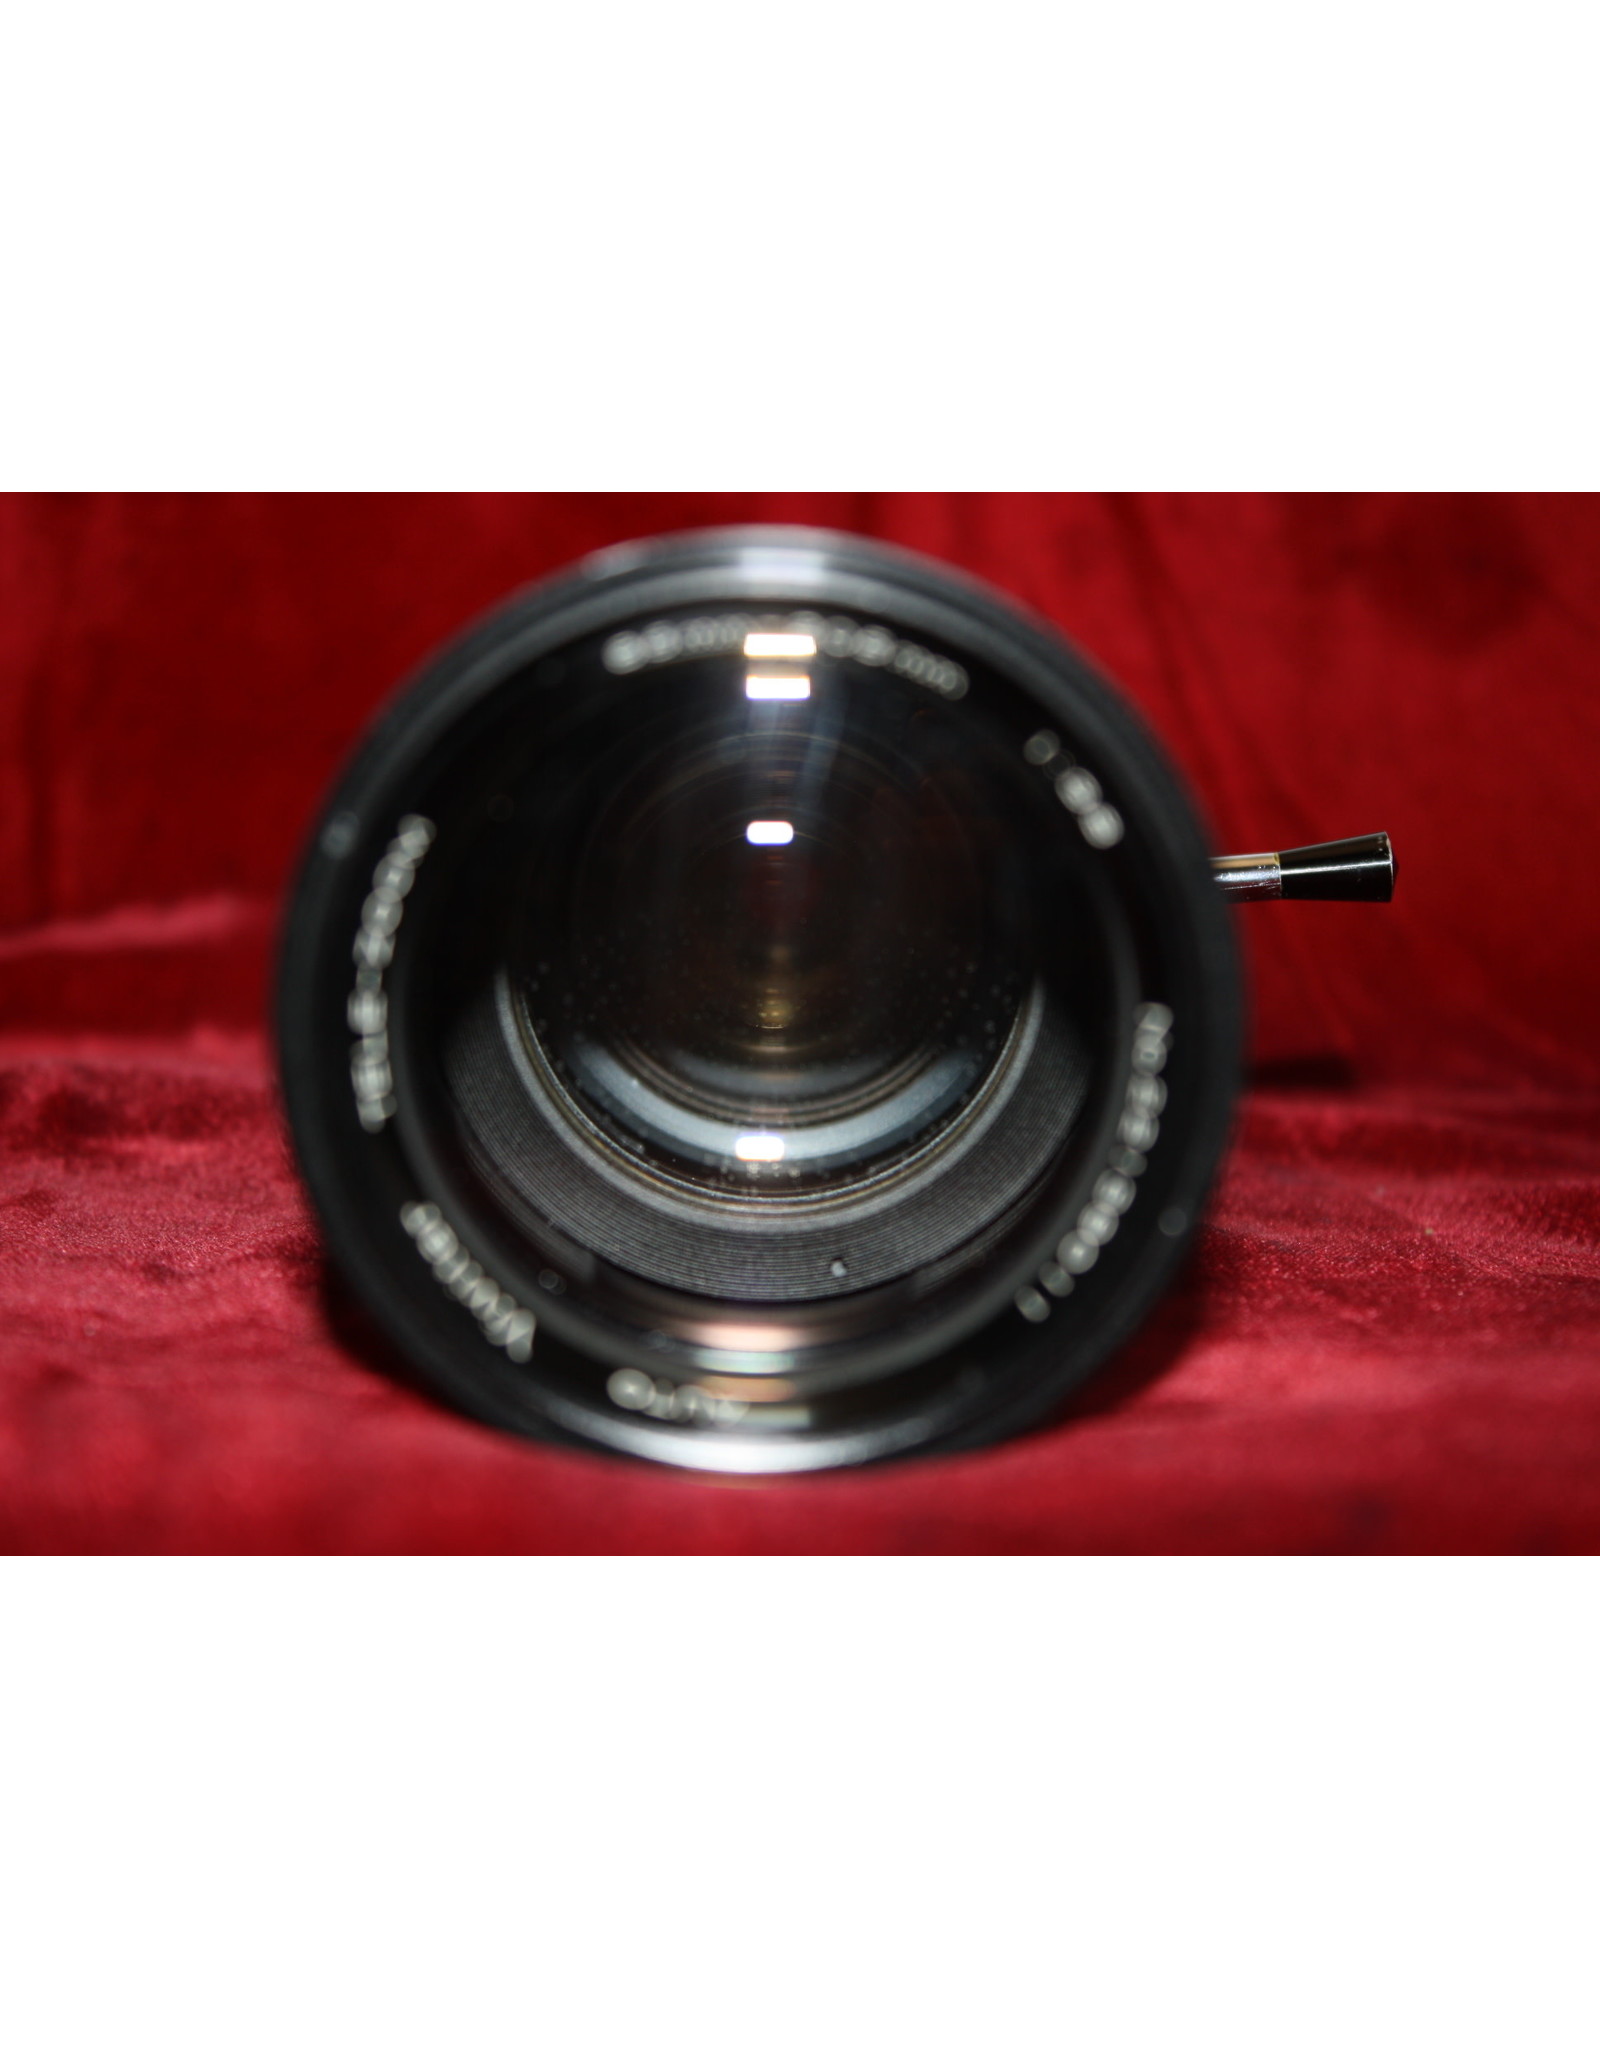 Minolta Vivitar 85-205mm f3.8 Lens Minolta MD (Pre-owned)